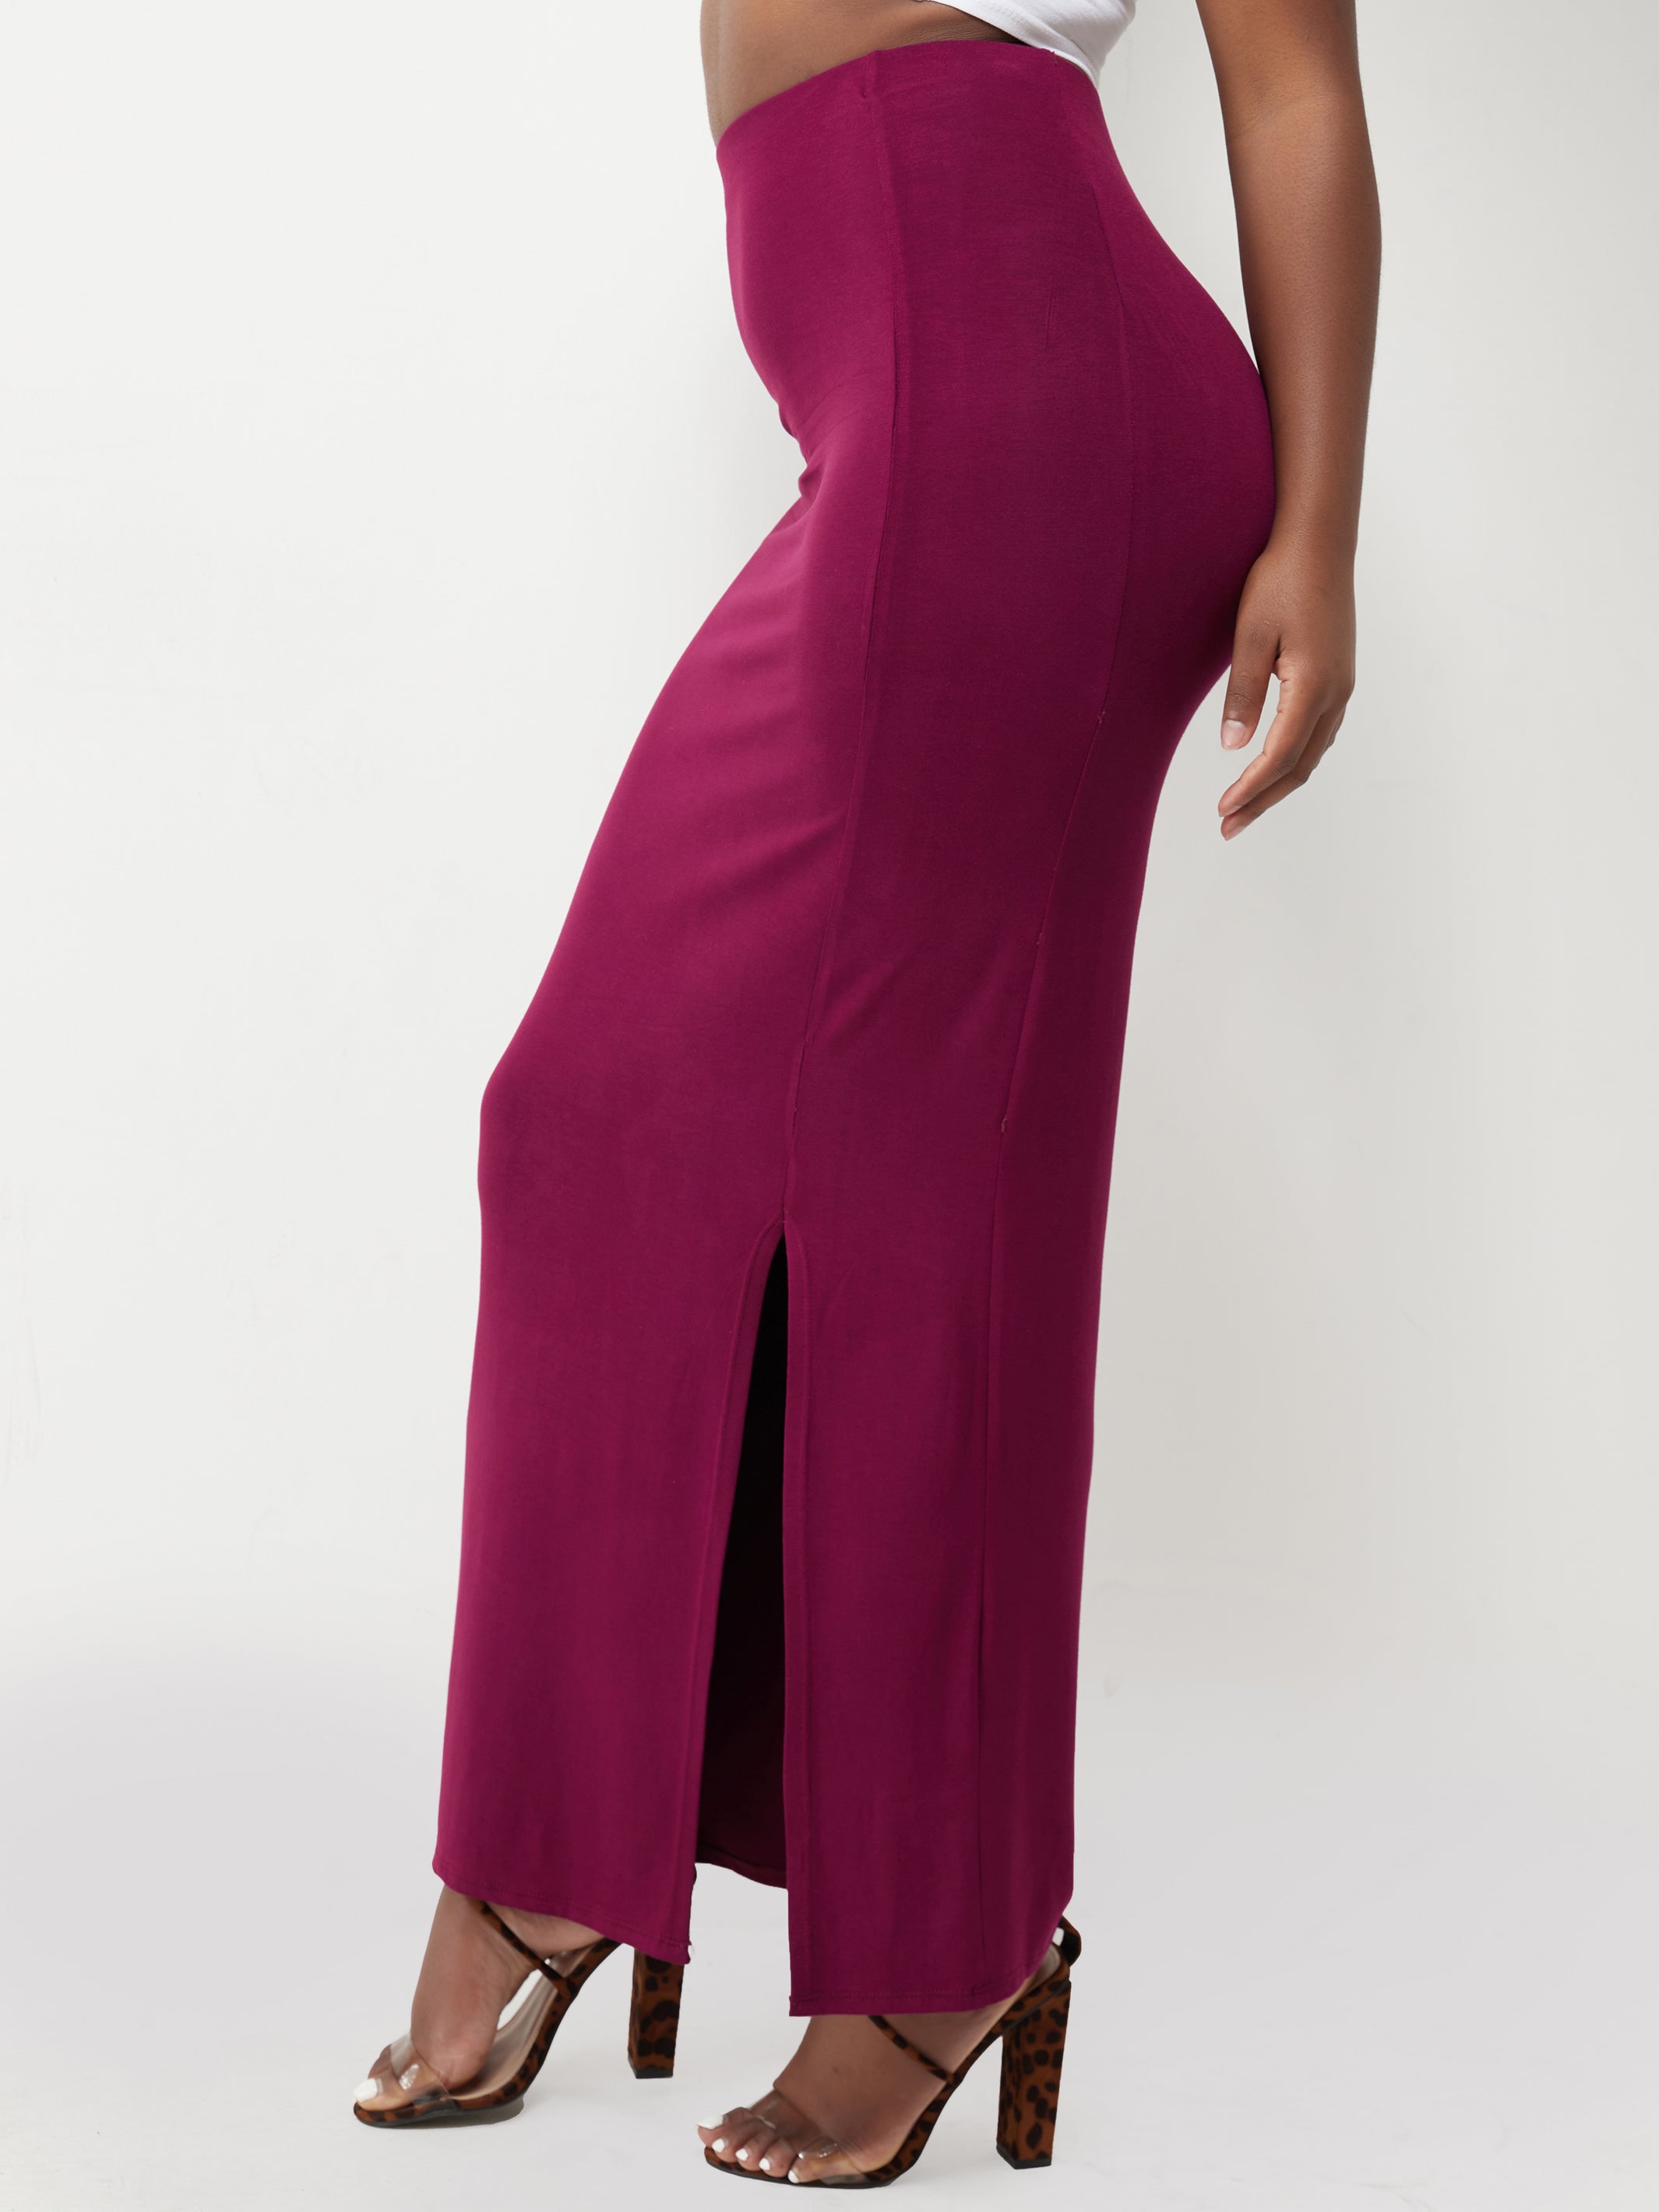 Vivo Basic Straight Skirt With Front Slit - Burgundy